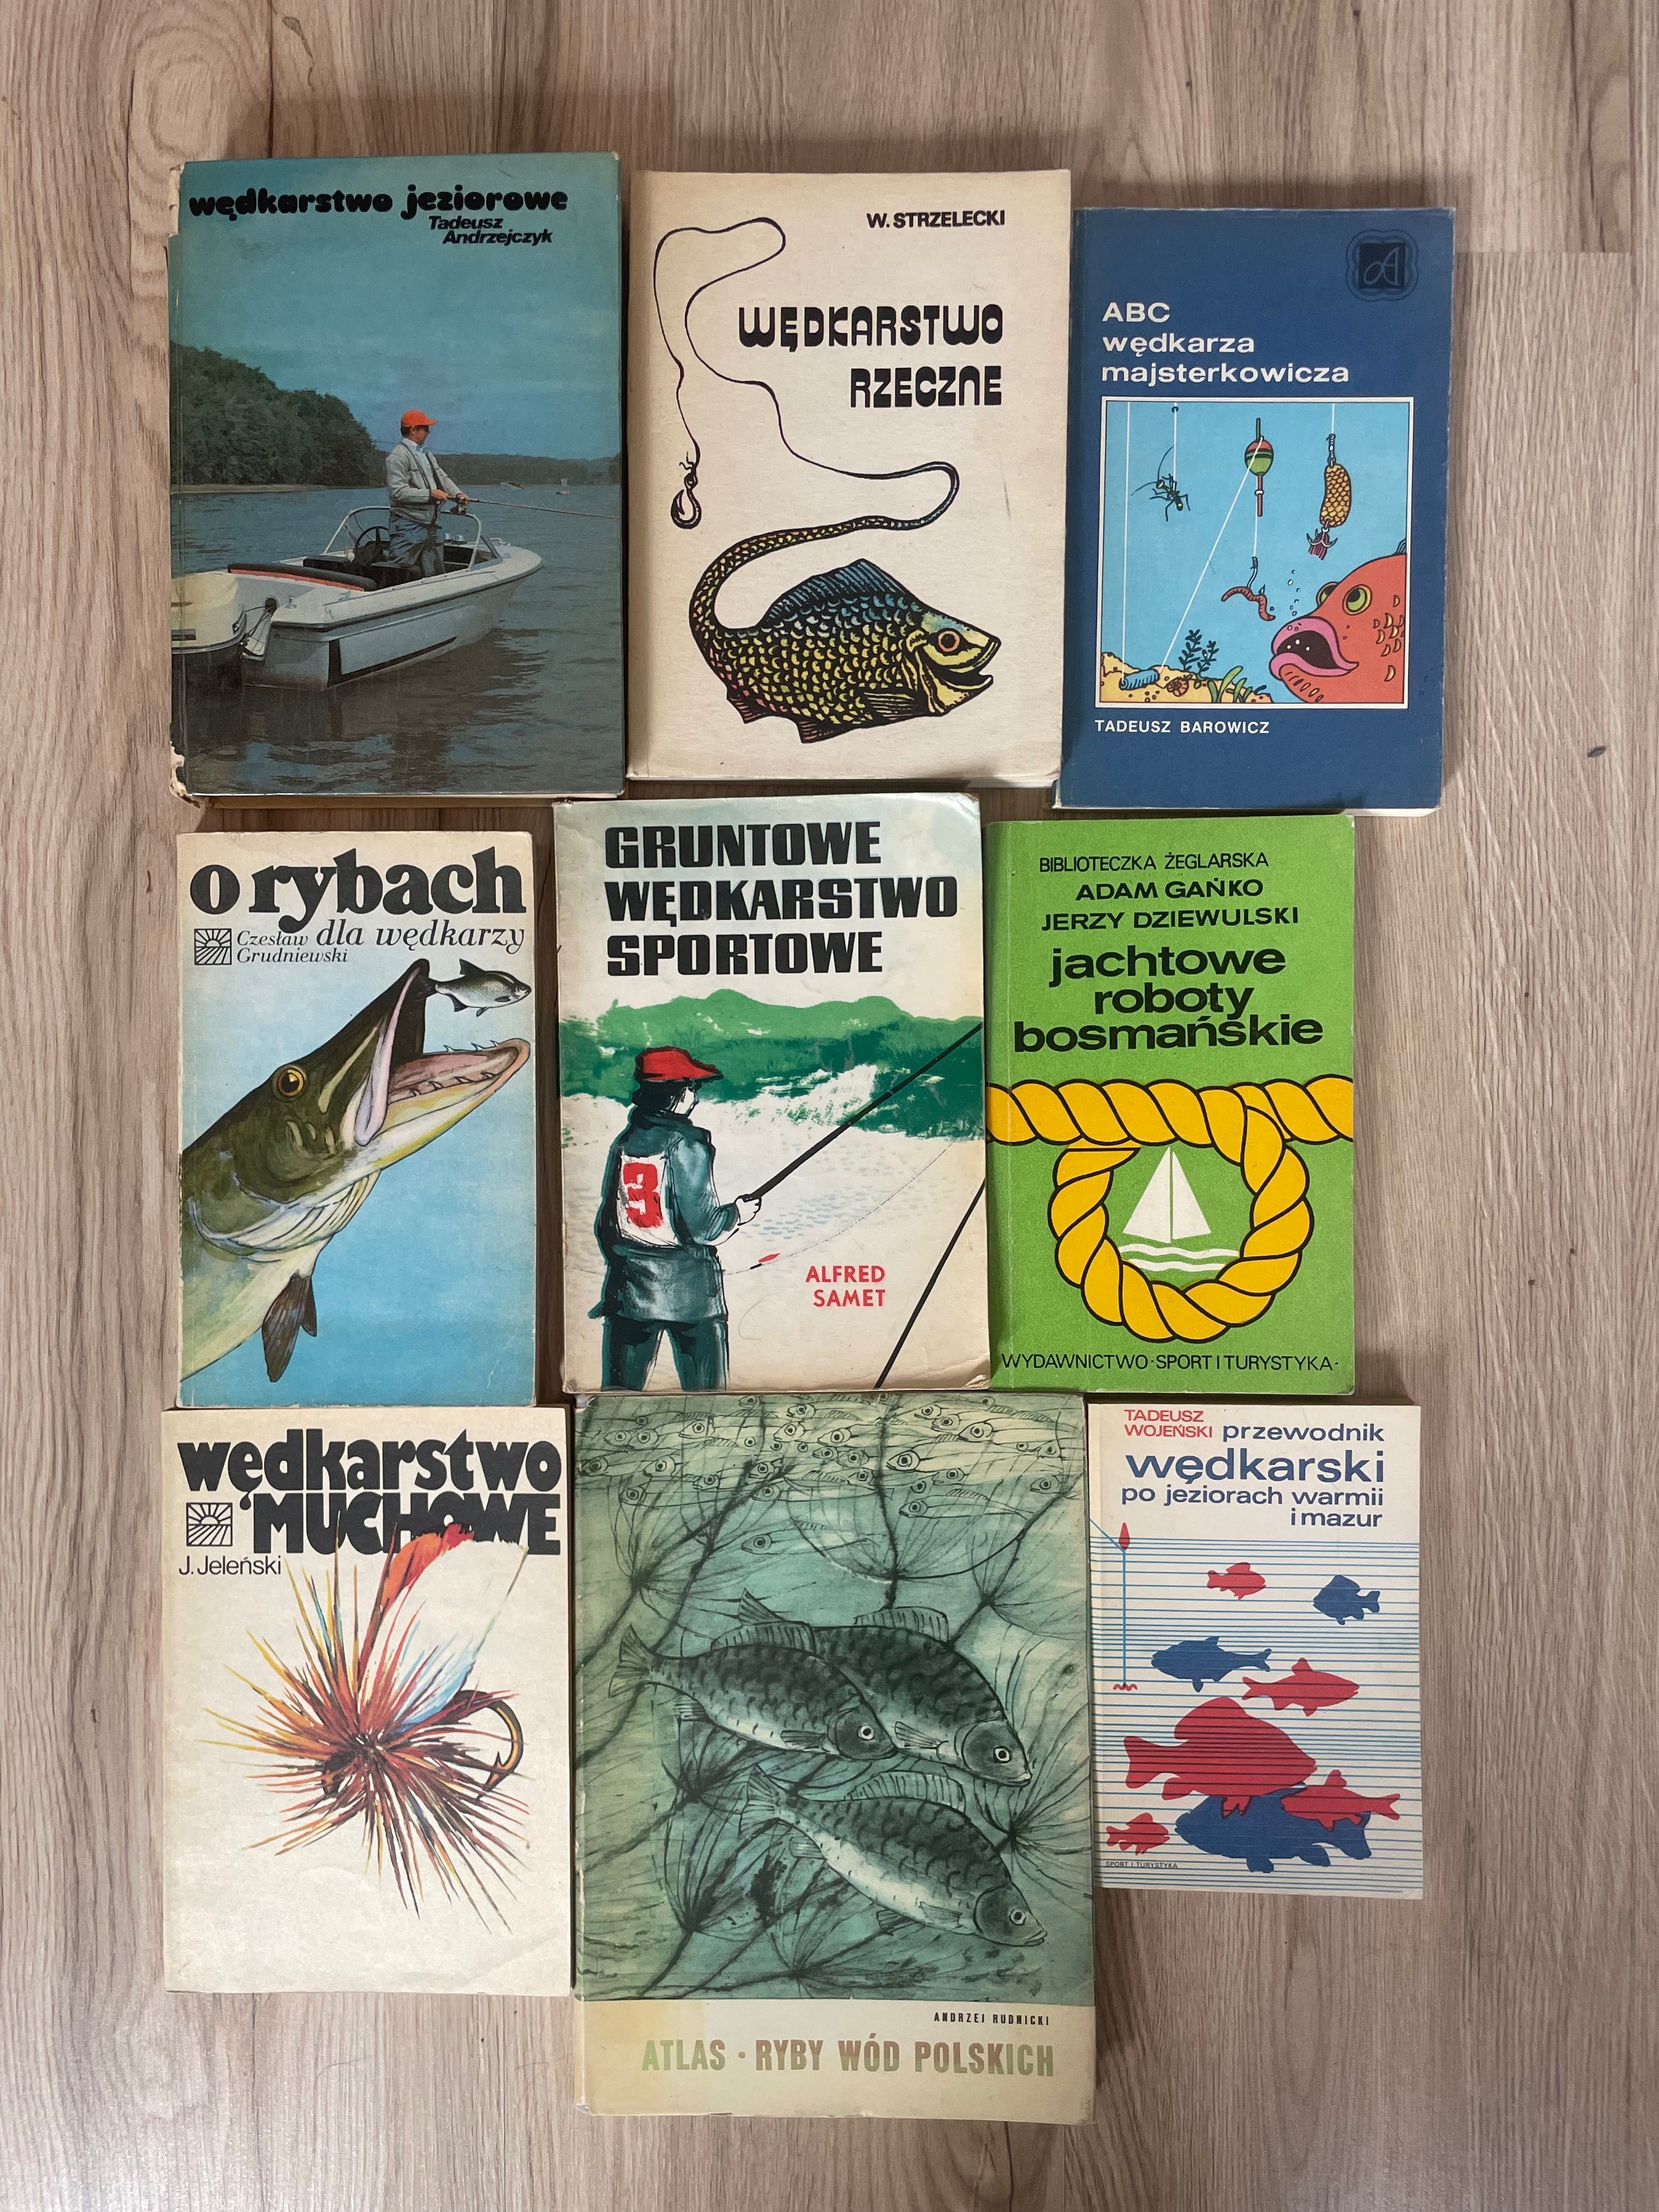 Wędkarstwo jeziorowe, rzeczne, ryby wód polskich,o rybach dla wędkarzy